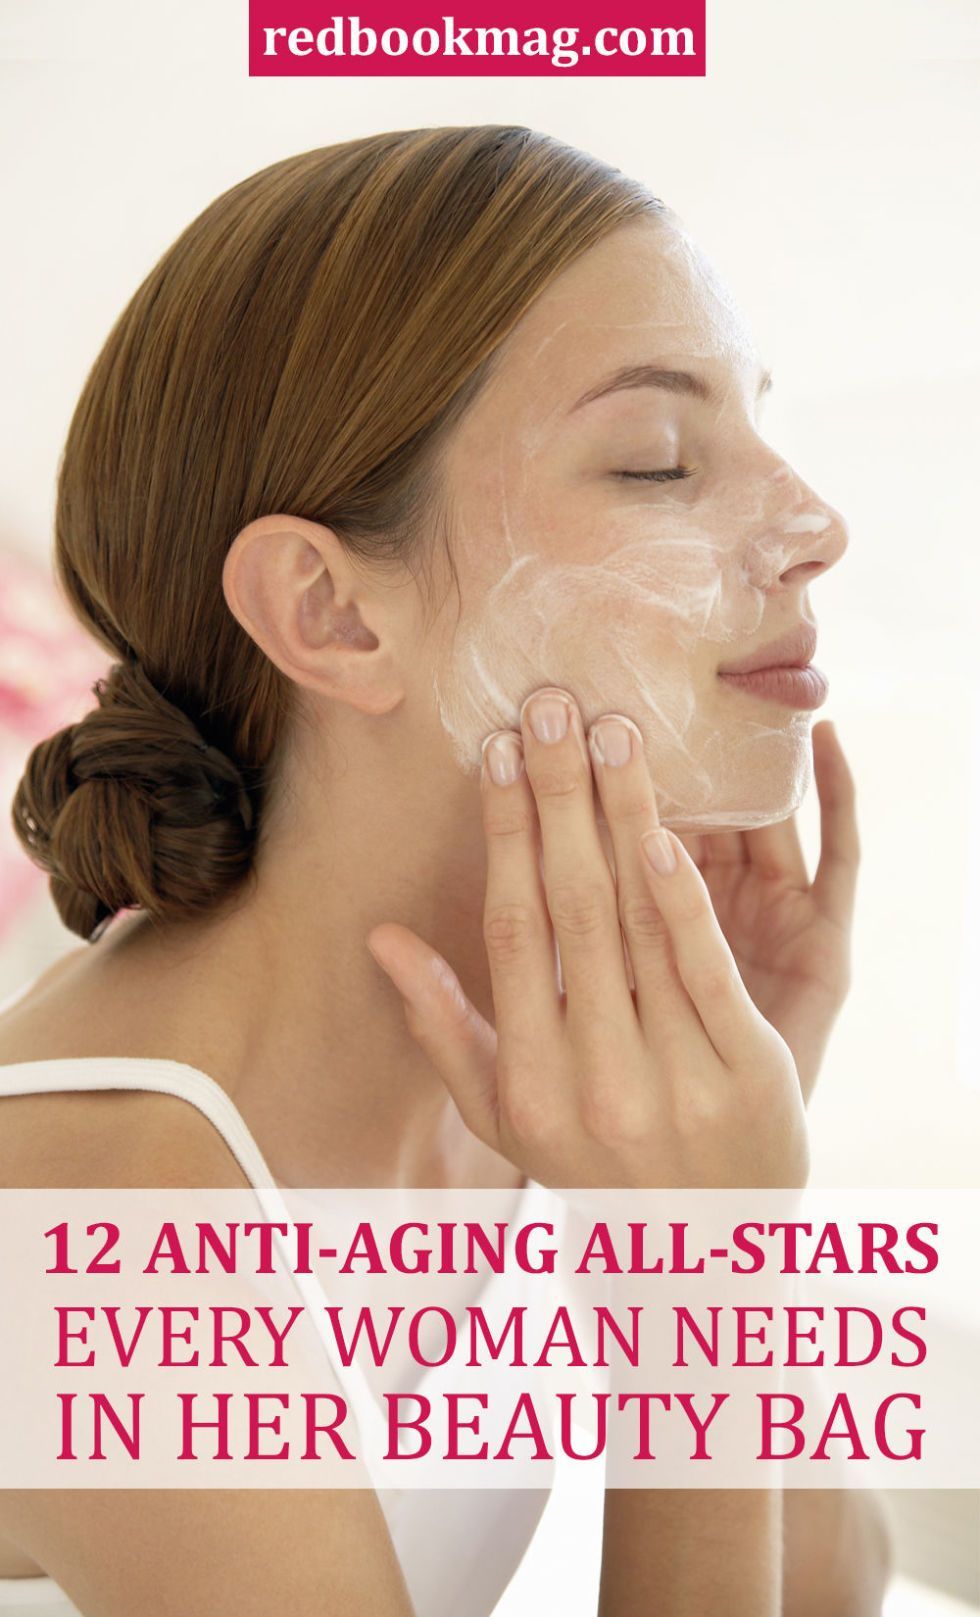 Cele mai bune produse anti-îmbătrânire din toate timpurile, potrivit dermatologilor de top